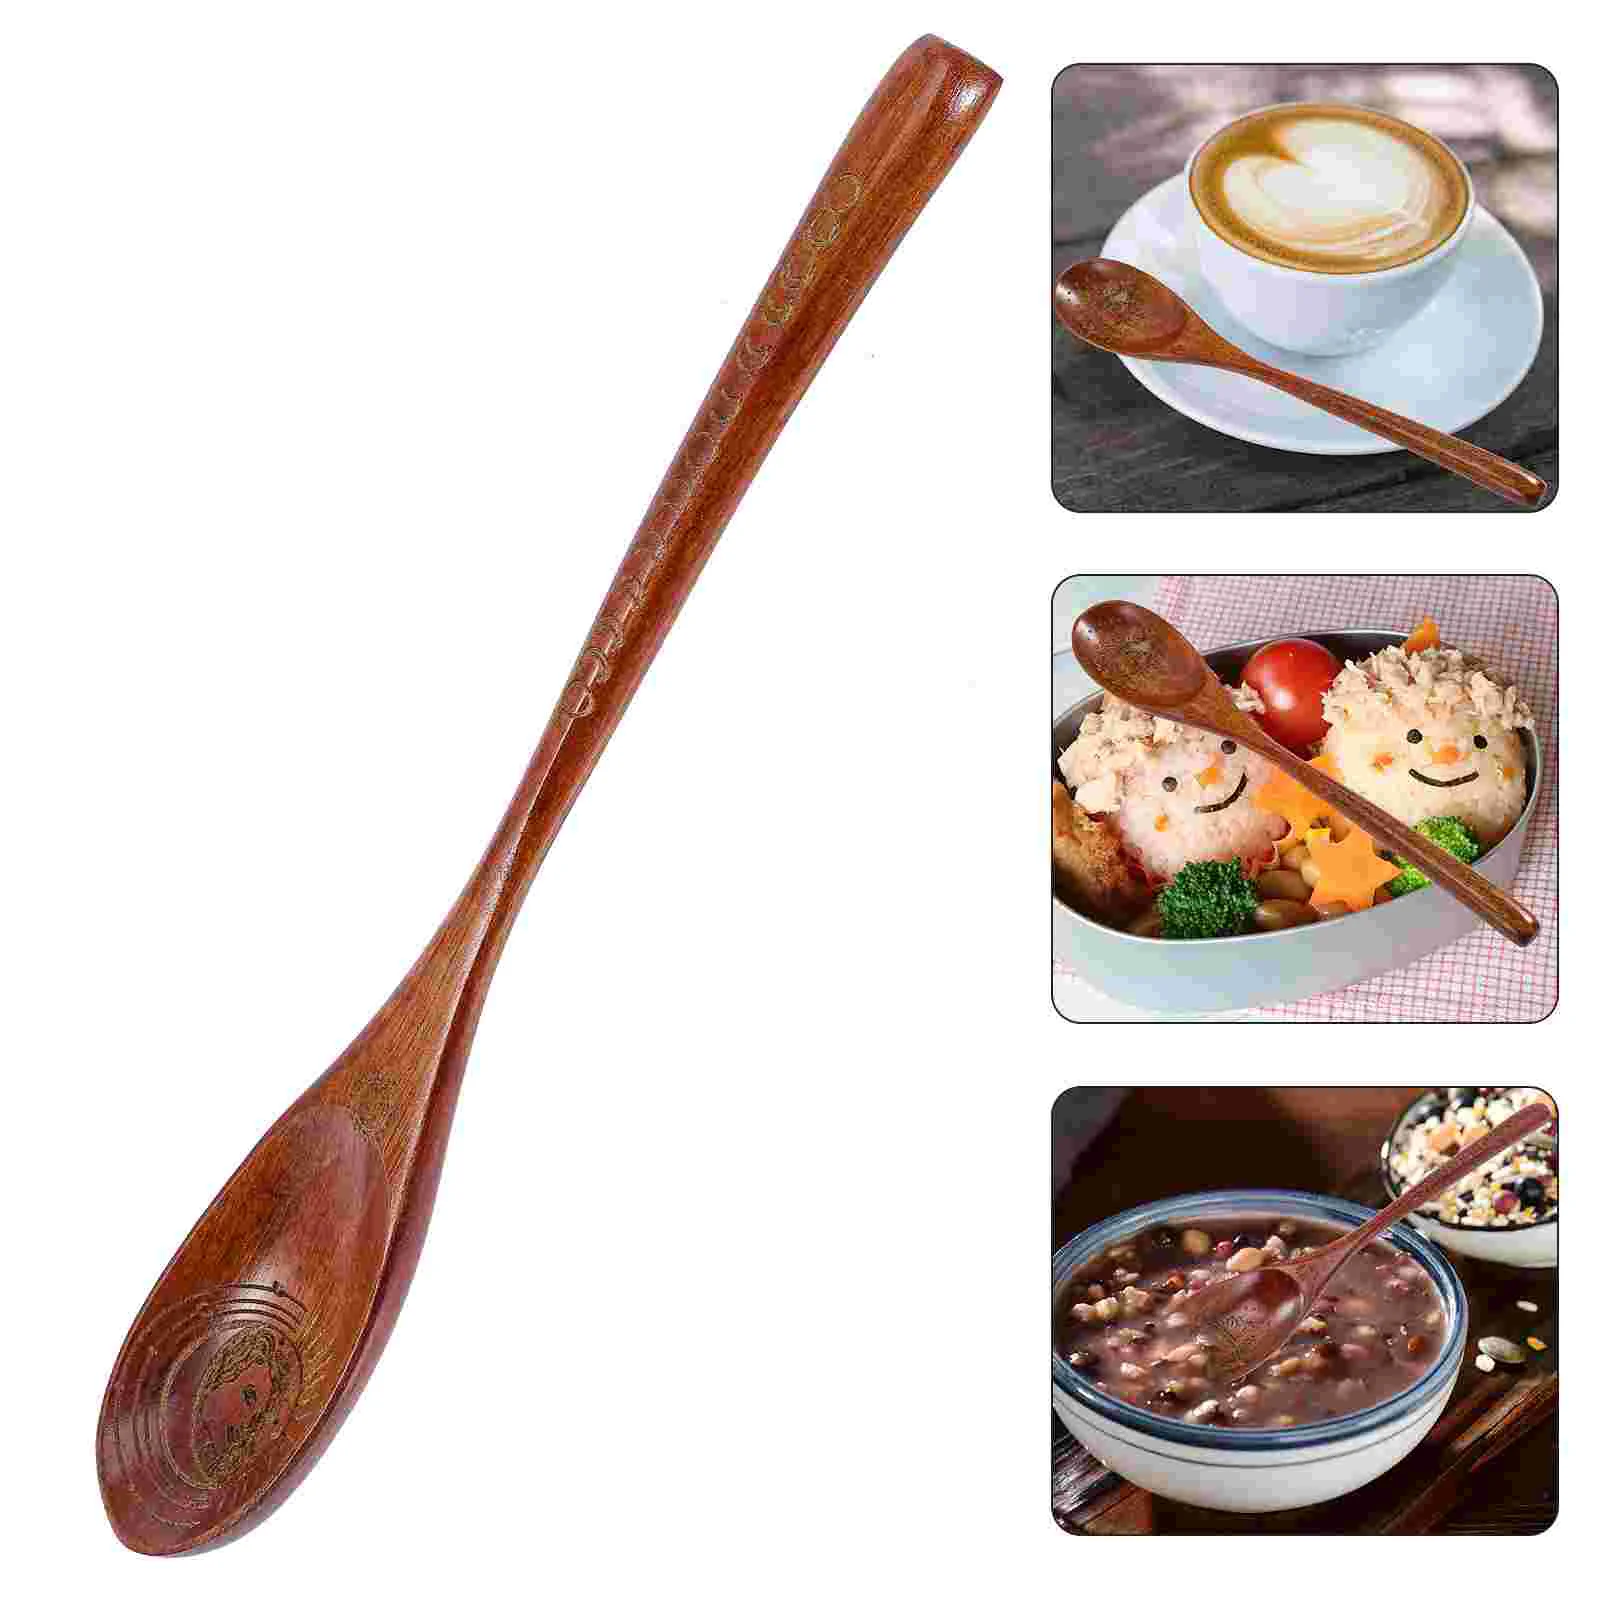 

Spoon Spoons Wood Wooden Coffee Dessert Tea Stirring Stir Scoop Mixing Bar Hot Soup Serving Fruit Japanese Teaspoon Sugar